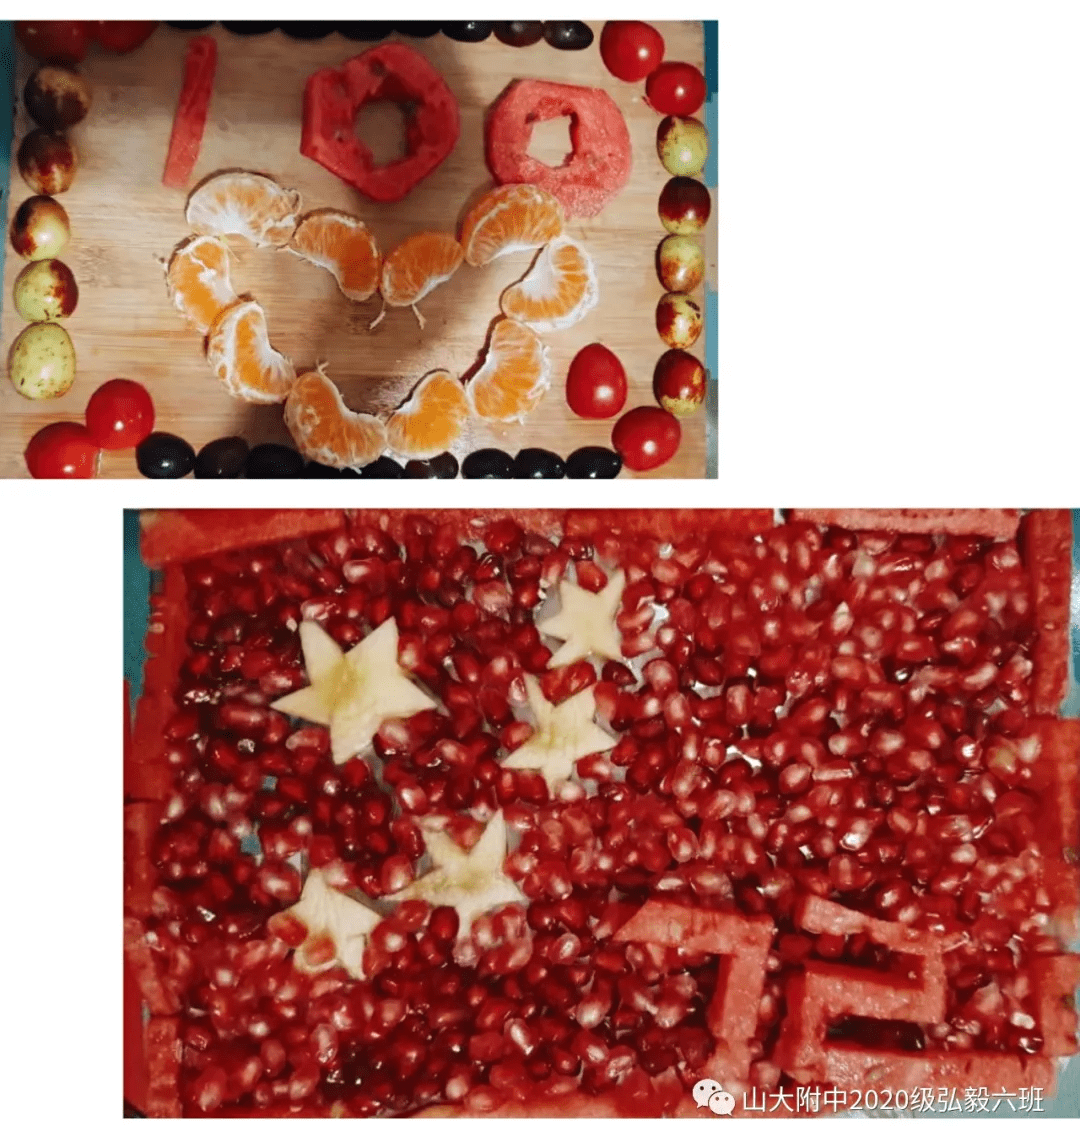 我这次制作的水果拼盘有两个,一个是用石榴,苹果,西瓜拼成的中国国旗